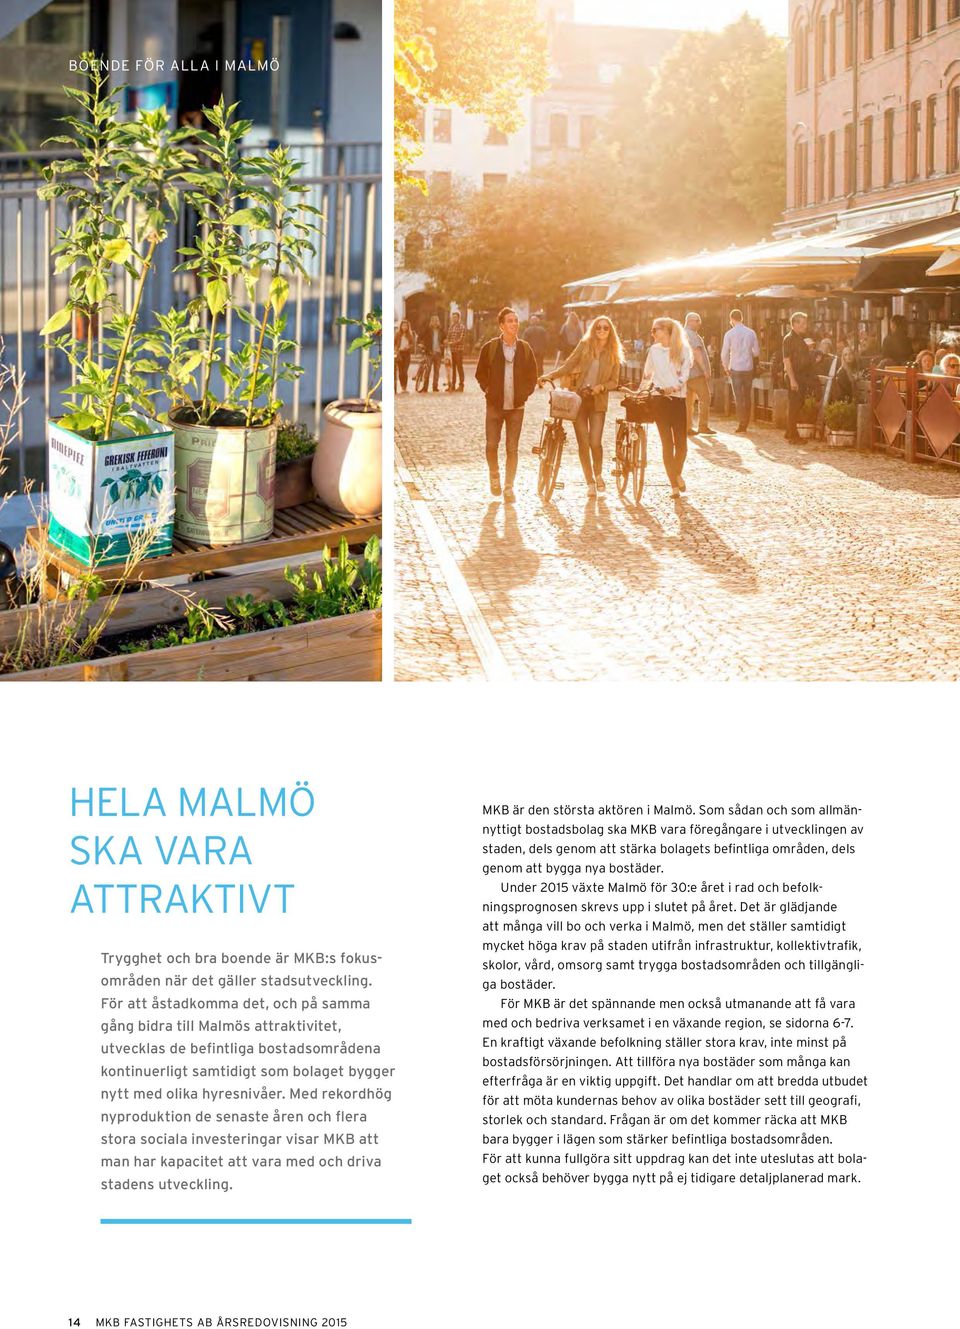 Med rekordhög nyproduktion de senaste åren och flera stora sociala investeringar visar MKB att man har kapacitet att vara med och driva stadens utveckling. MKB är den största aktören i Malmö.